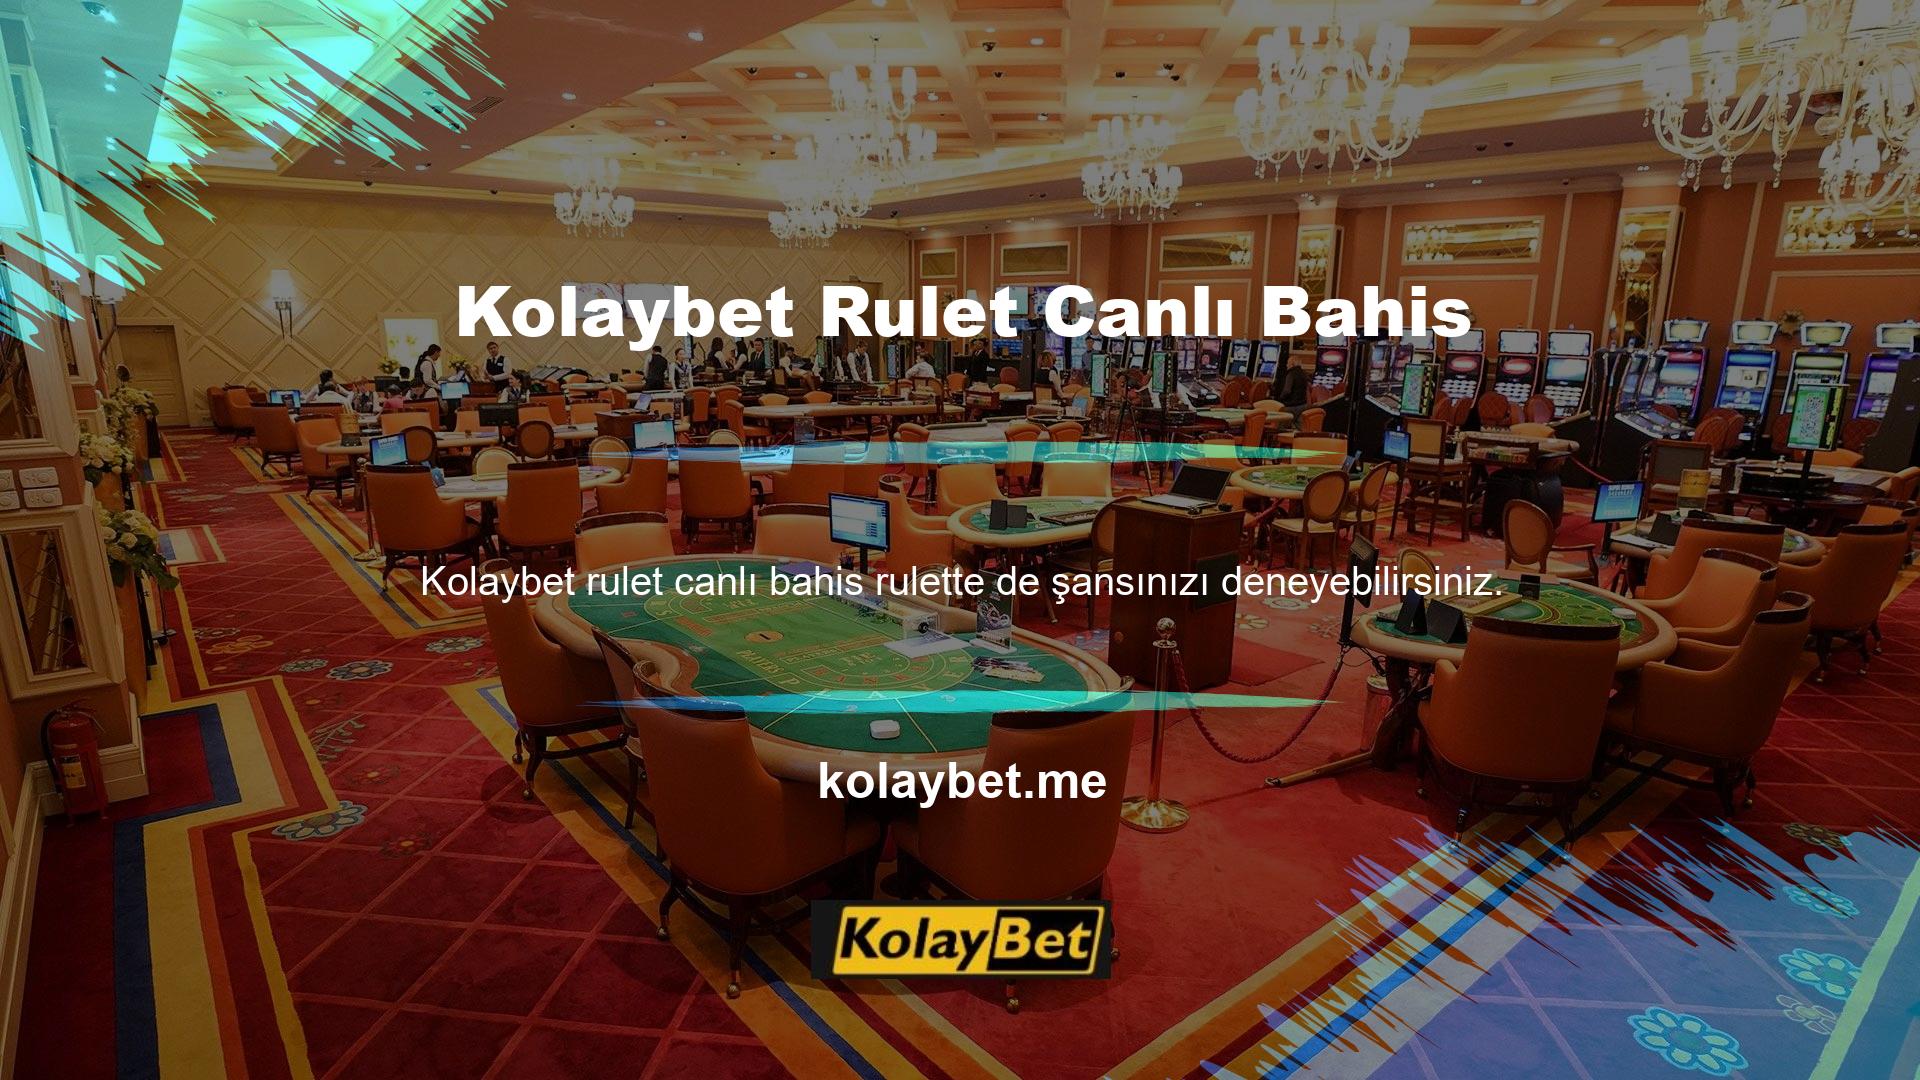 Güvenilir bir çevrimiçi casino platformu, kullanıcıları canlı bir atmosfere davet ediyor